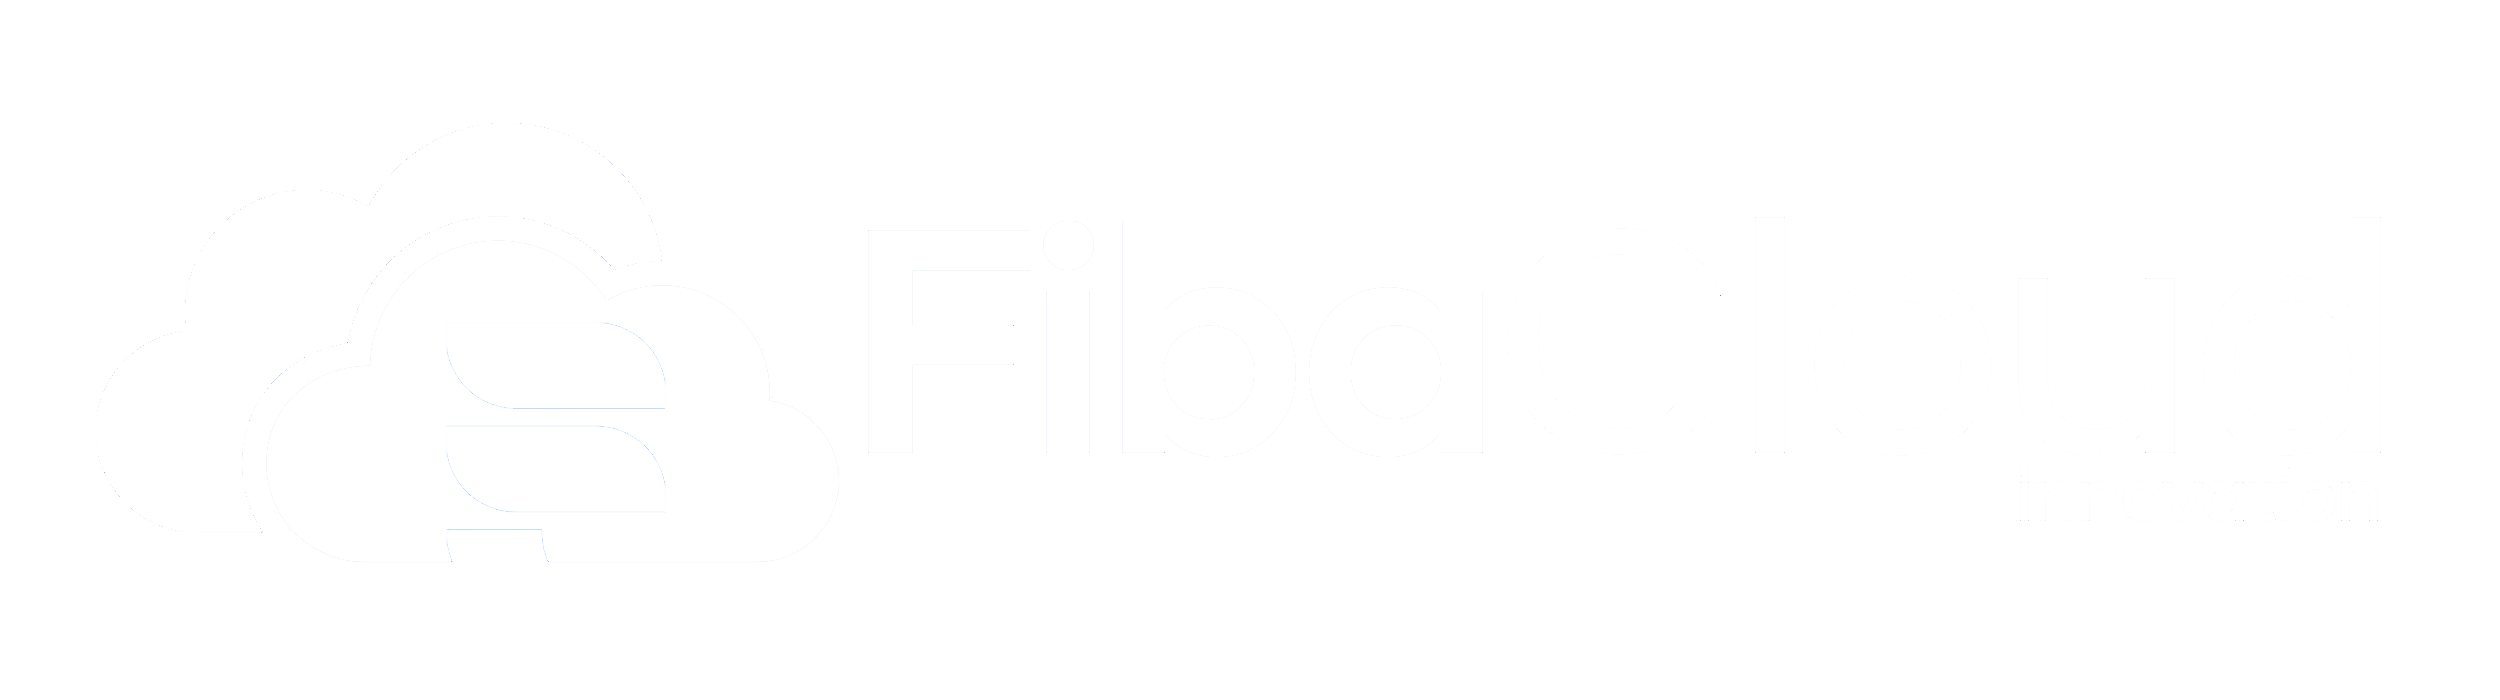 FibaCloud